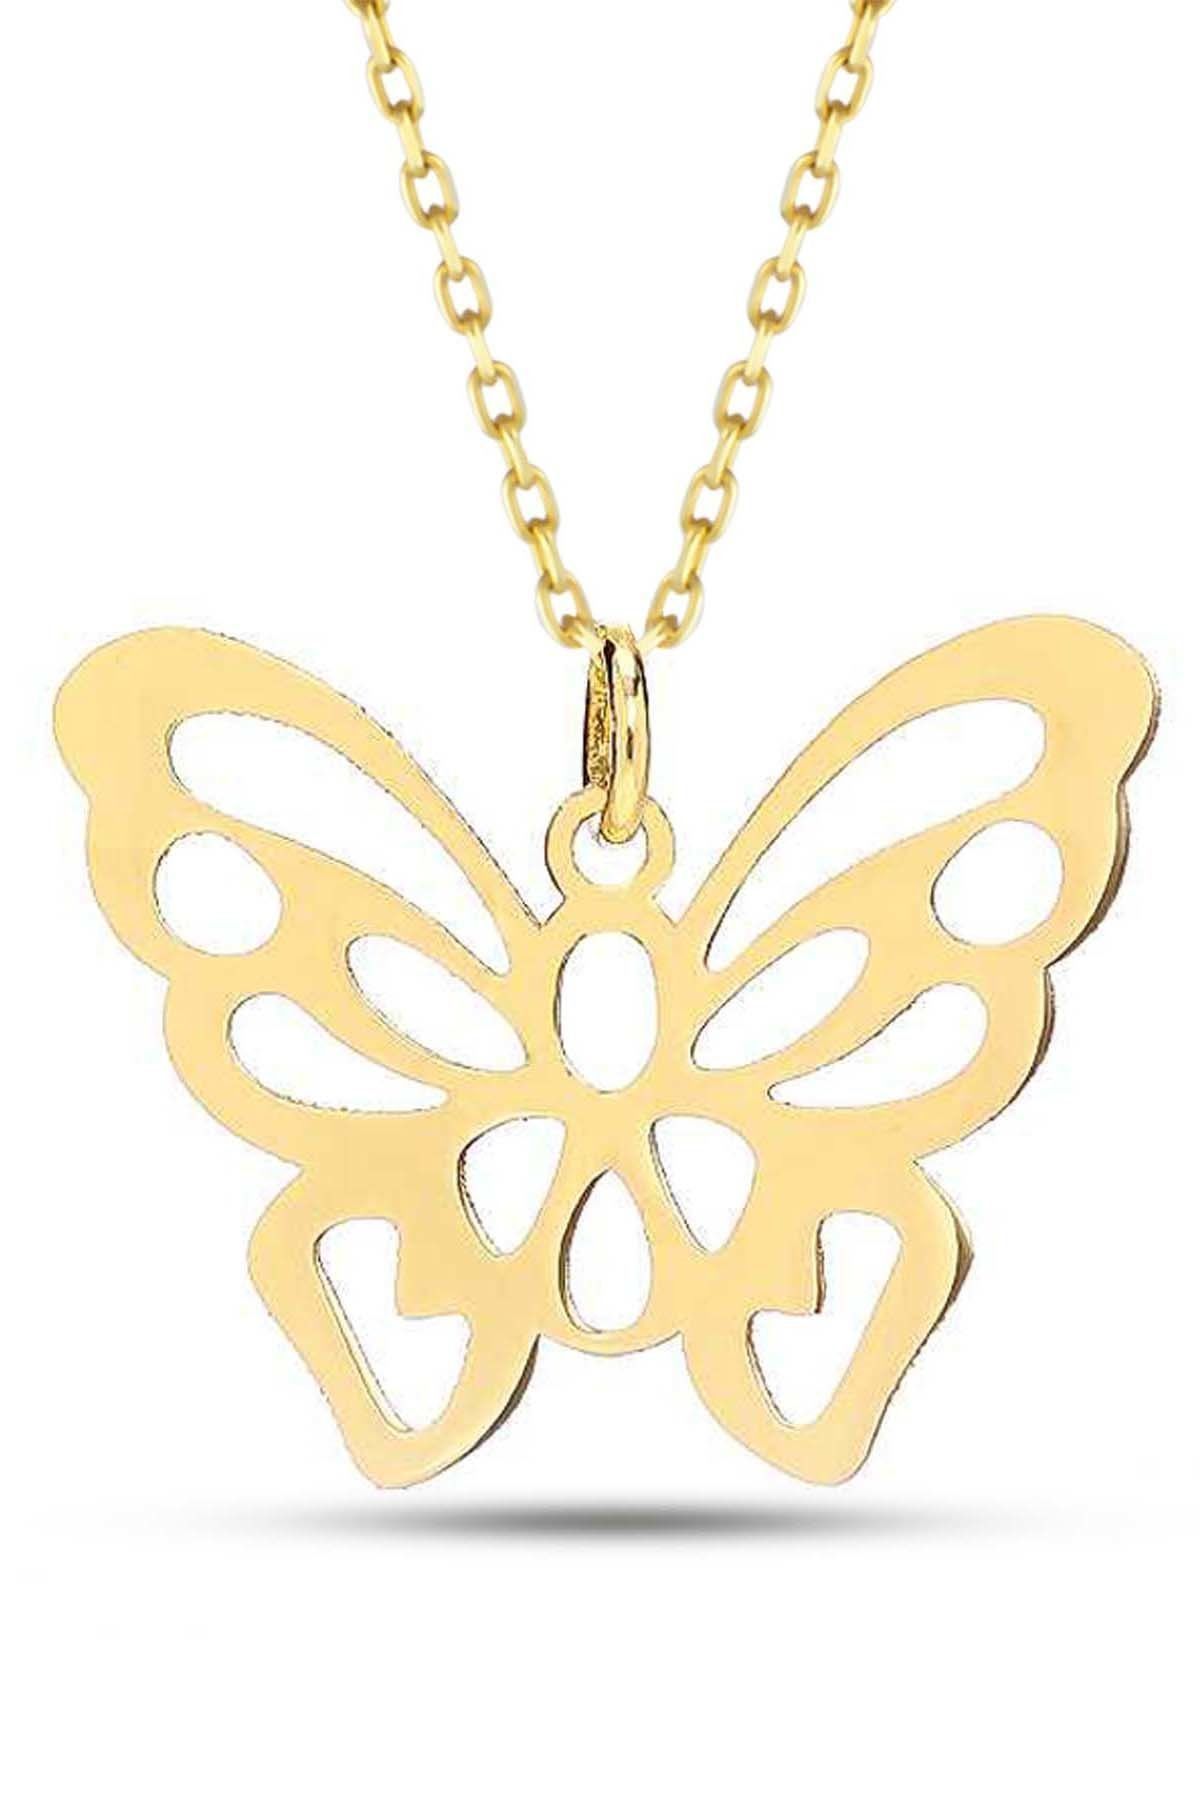 Prenses Pırlanta-14 Ayar Altın Kelebek Altın Kolye Modeli